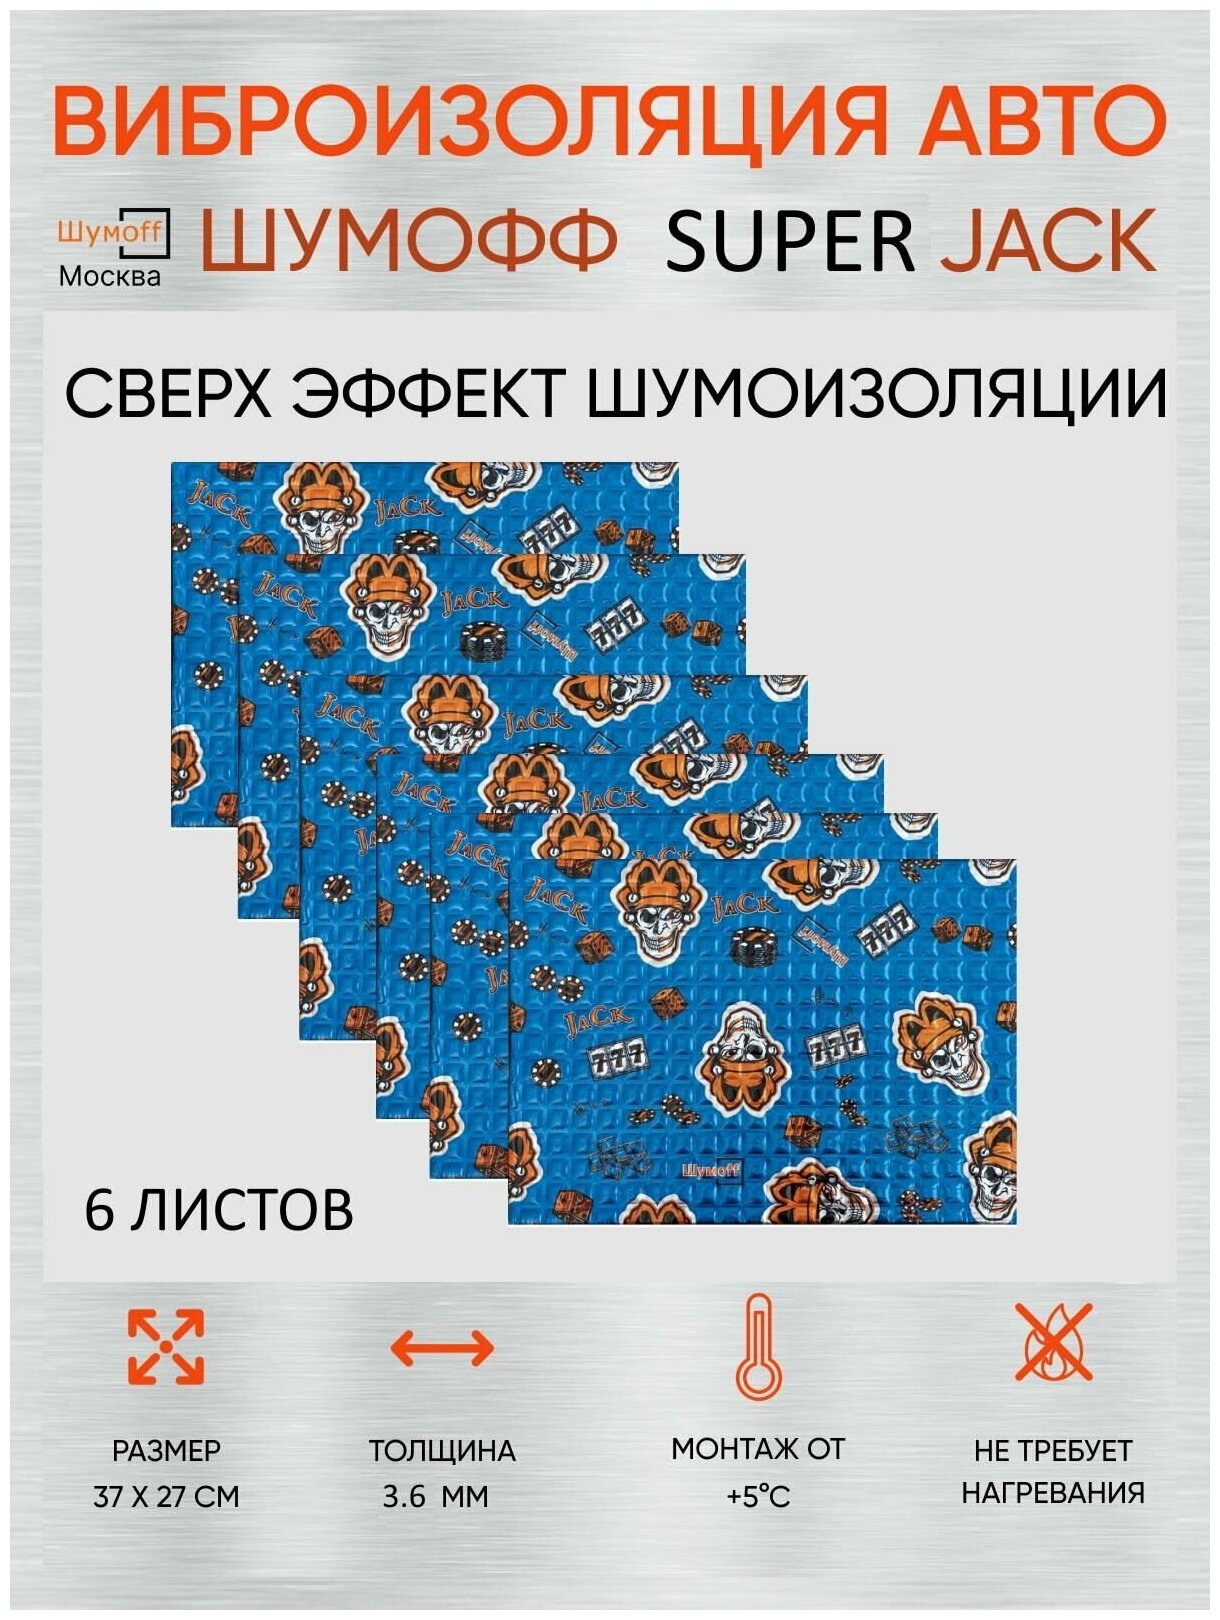 Шумоизоляция Шумофф Super Jack 3.6мм упаковка (6 листов) - Виброизоляция для автомобиля и в быту Супер Джек- аналог М4